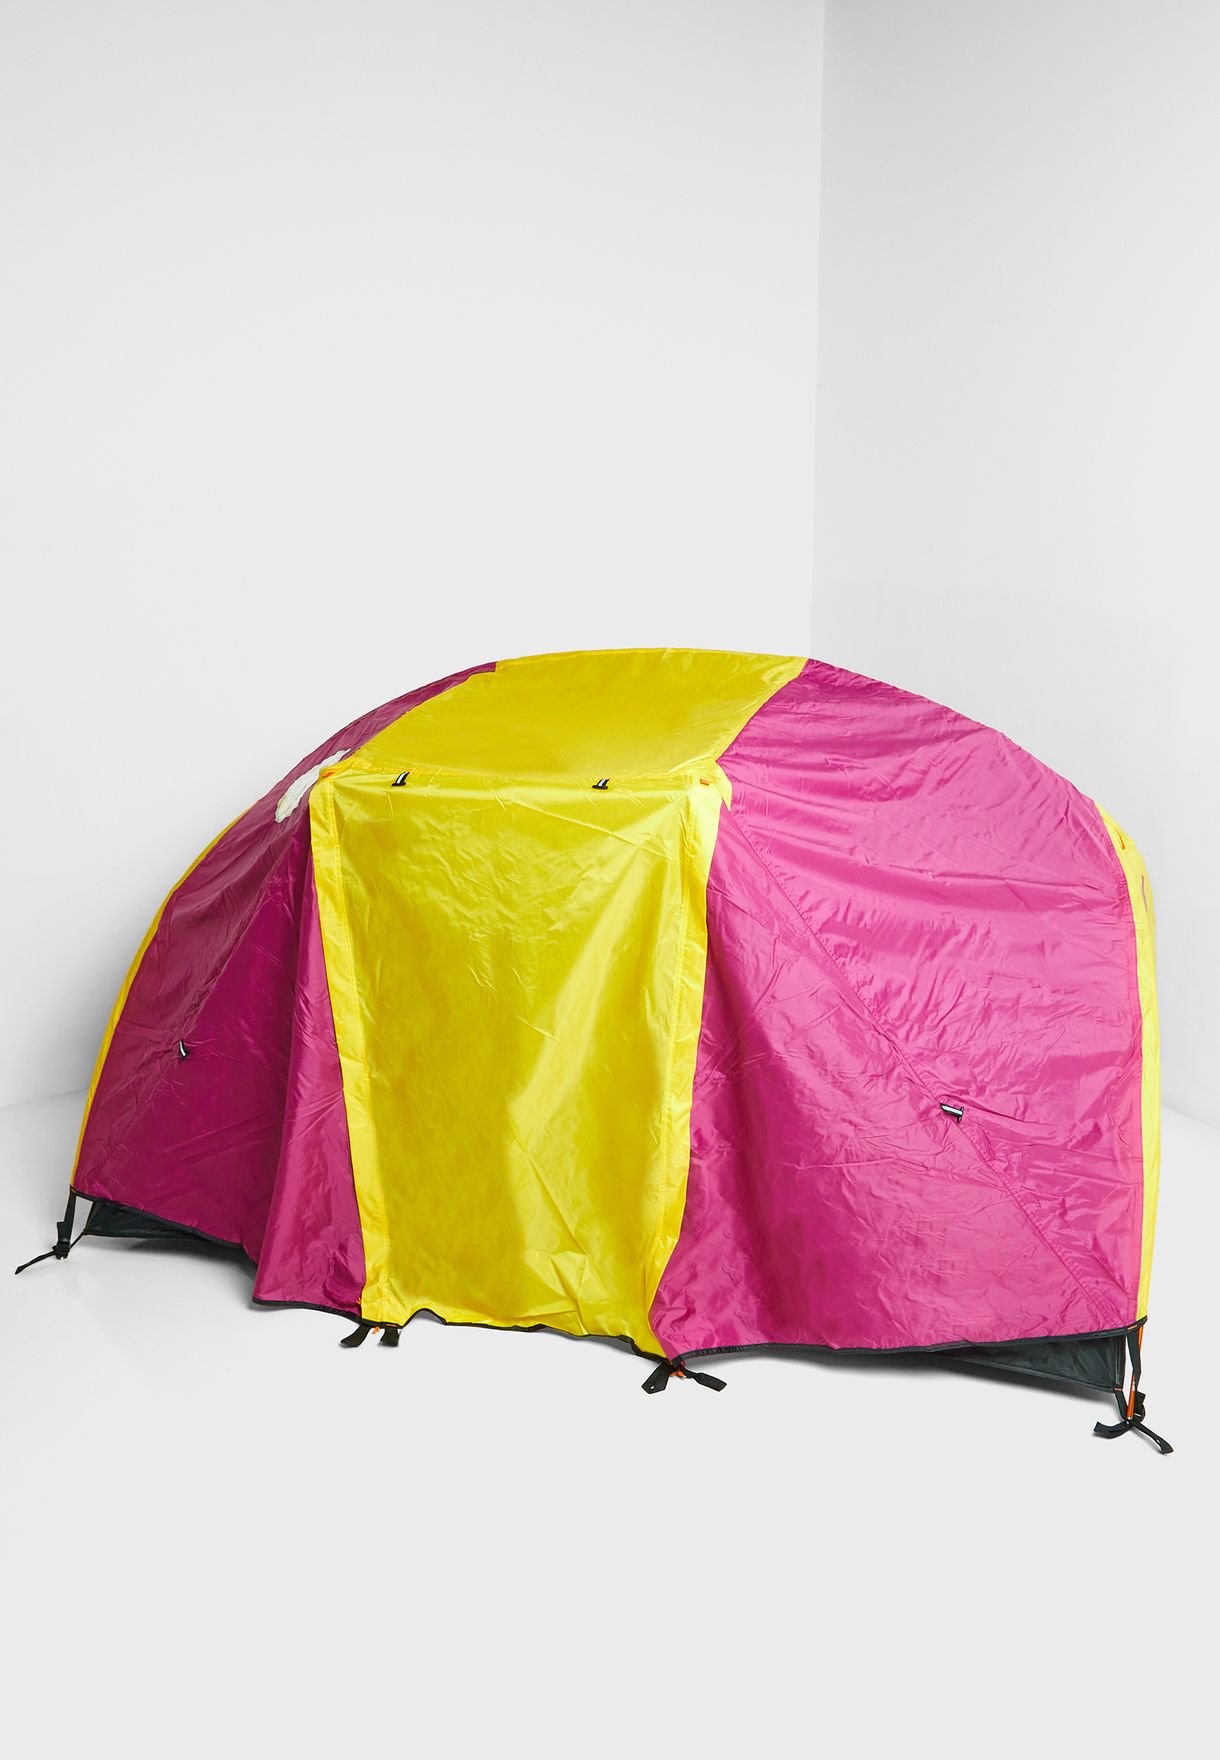 خيمة لشخصين